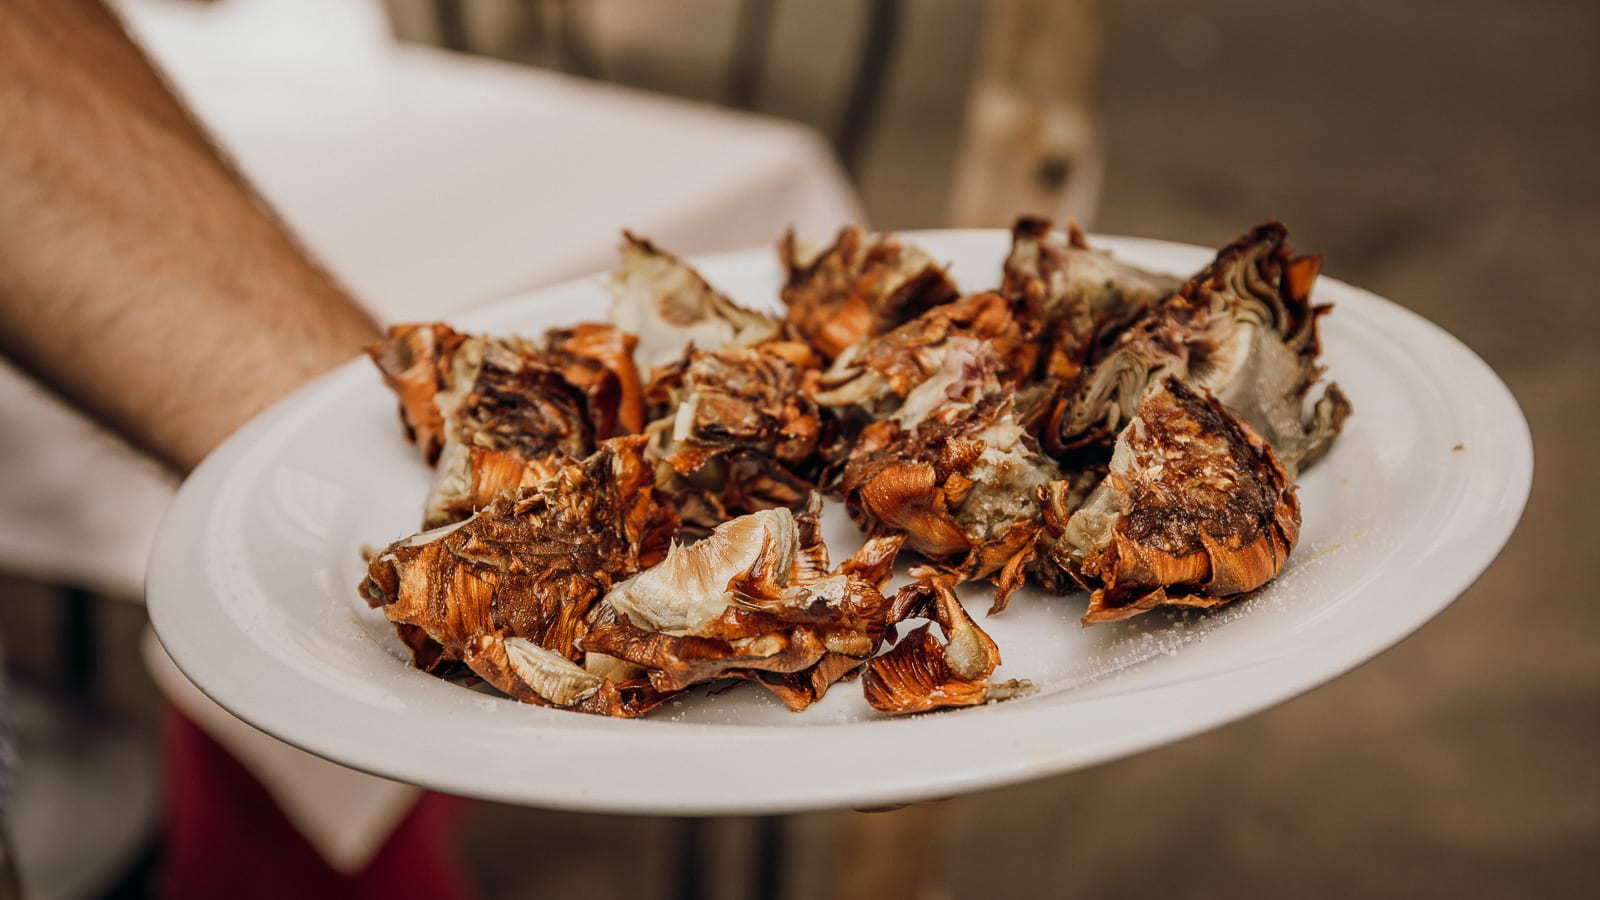 Crispy fried Roman artichokes on a plate